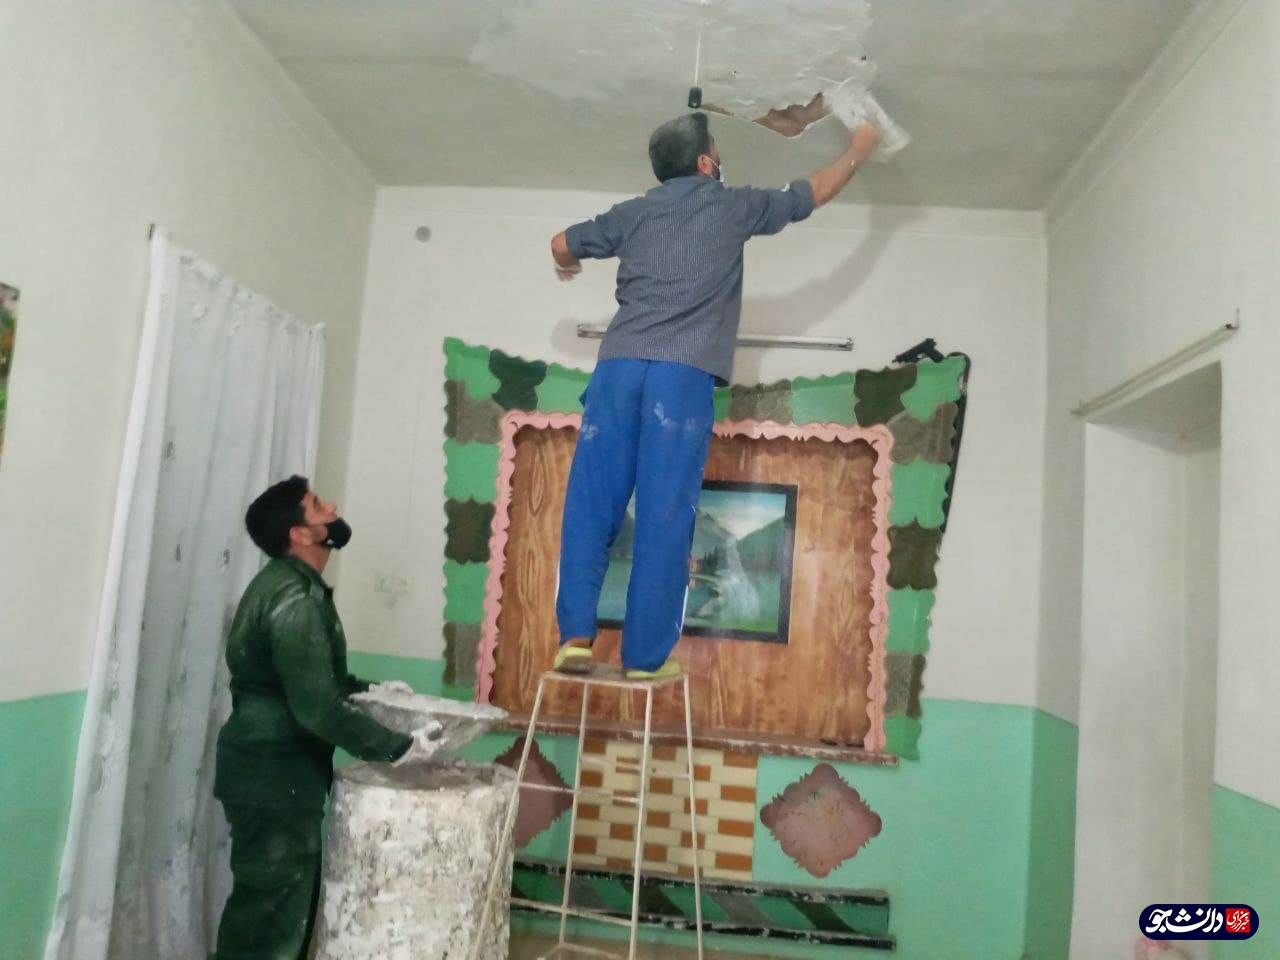 دانشجویان بسیجی دانشگاه آزاد سمنان به بازسازی یکی از منازل حاشیه ای پرداختند